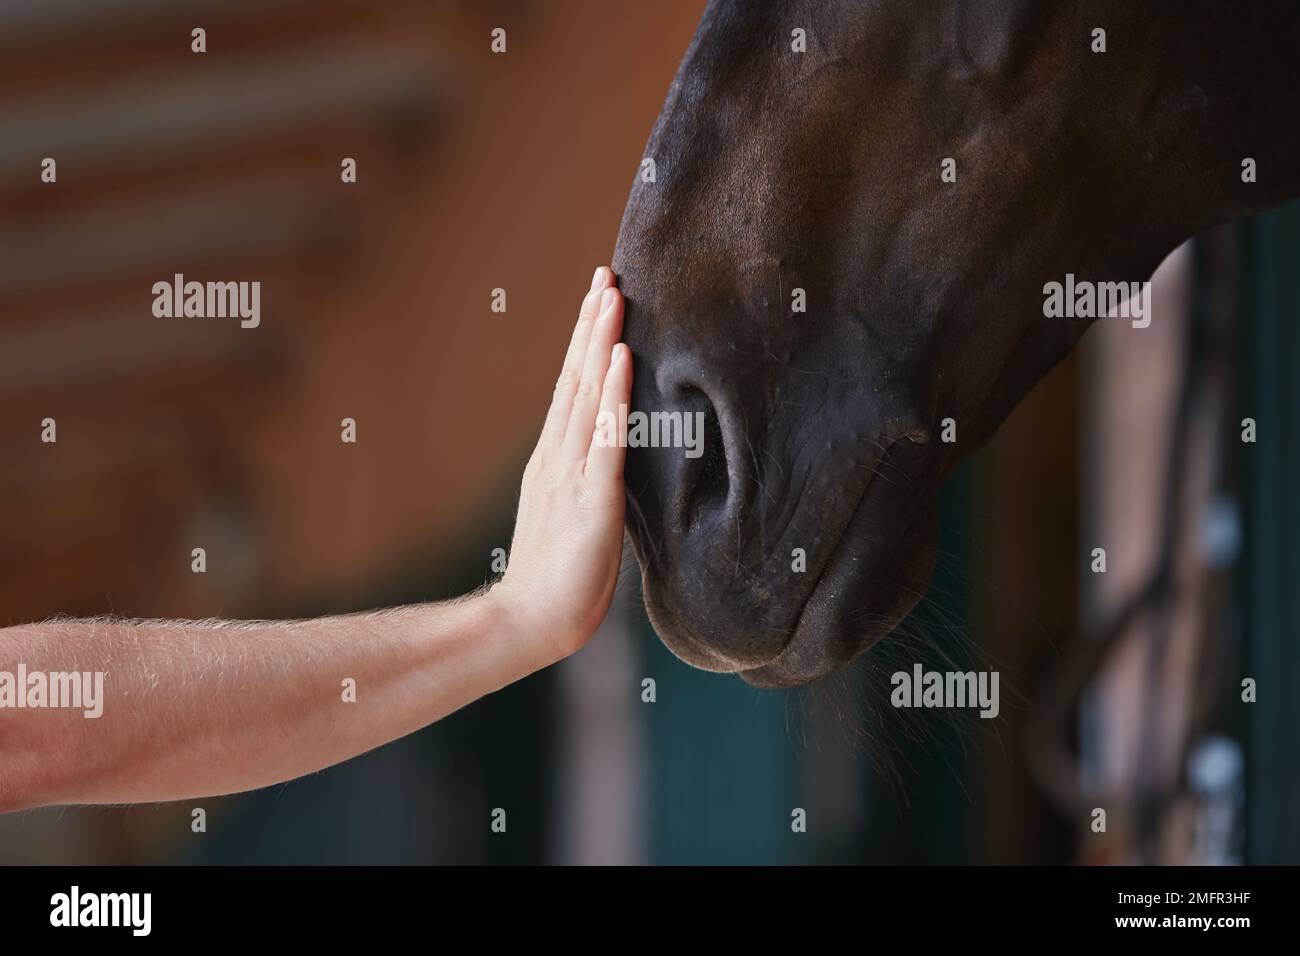 Amicizia tra l'uomo e il suo cavallo. Mano umana che accarezzava la testa di cavallo nella stalla. Foto Stock